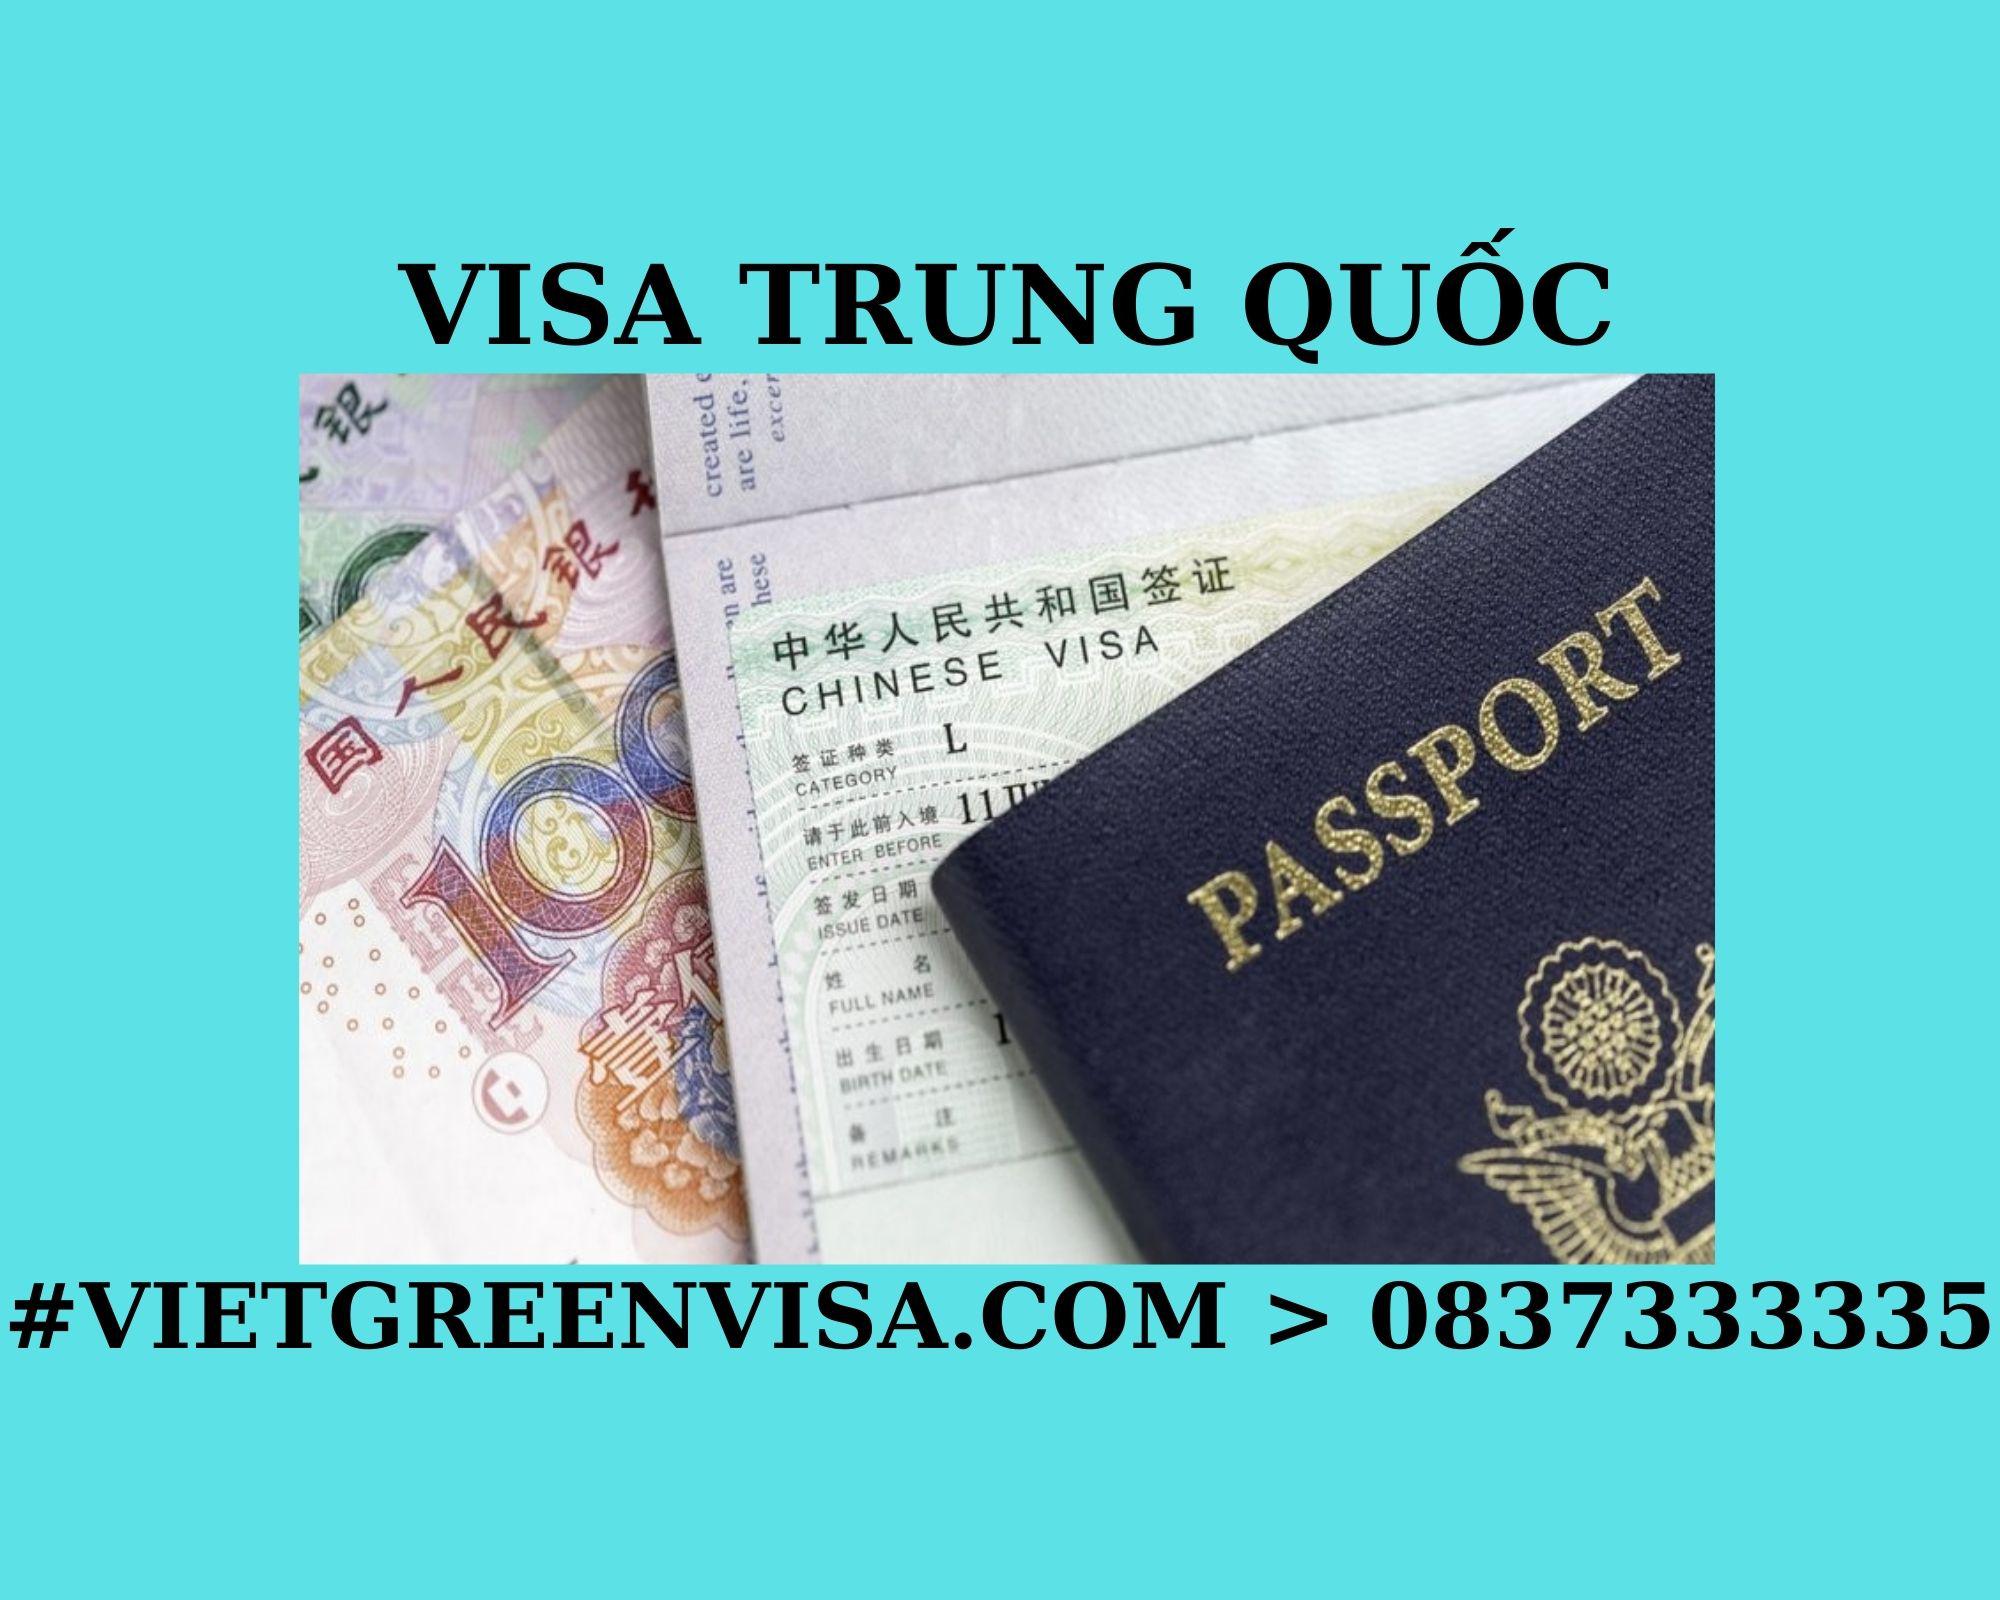 Tư vấn xin Visa Trung Quốc trọn gói tại Hà Nội, Hồ Chí Minh